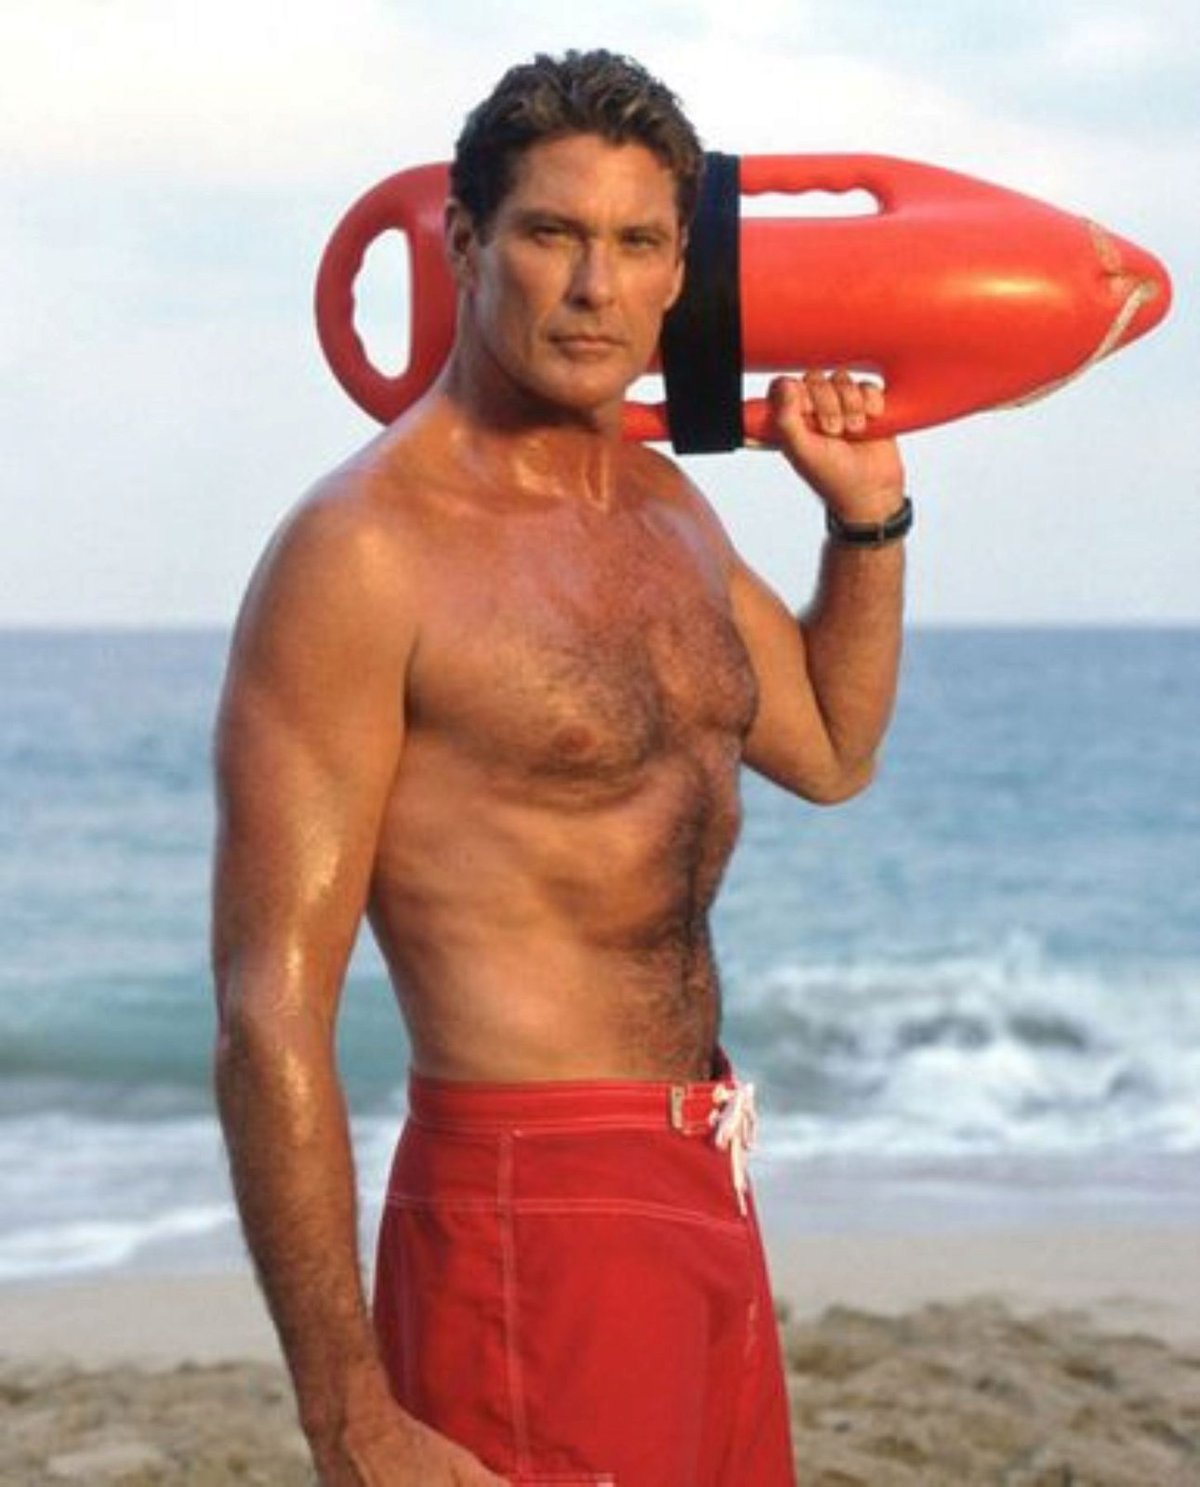 Herec David Hasselhoff ve své nejznámější roli záchranáře.